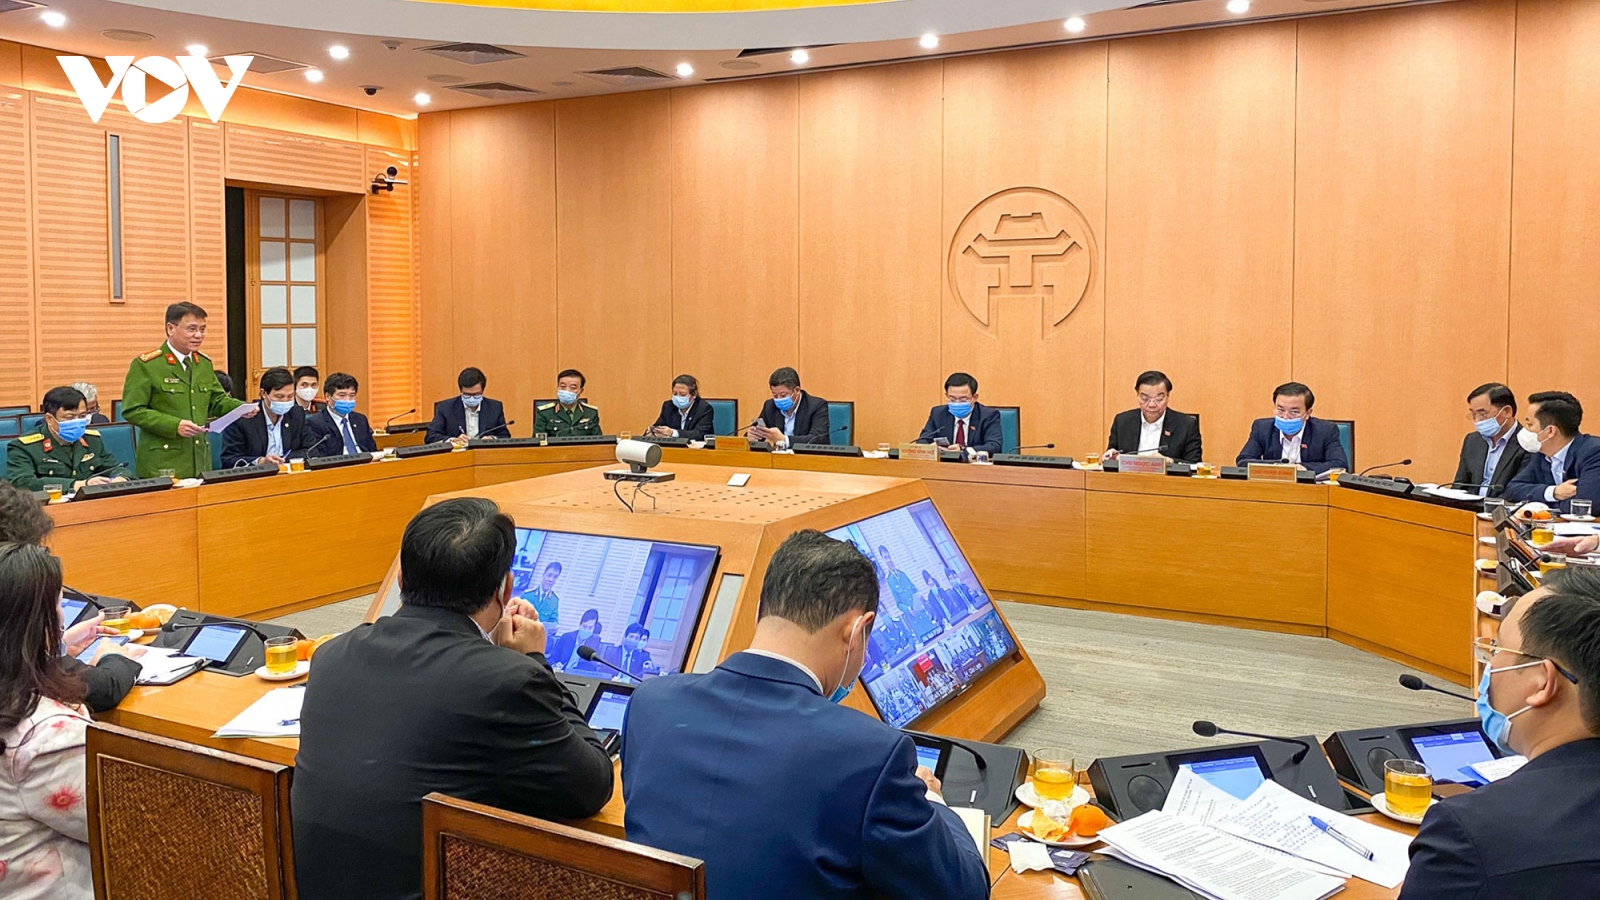 Bí thư Thành ủy Hà Nội: Phòng chống dịch Covid-19 phải nhanh hơn, nhạy bén hơn